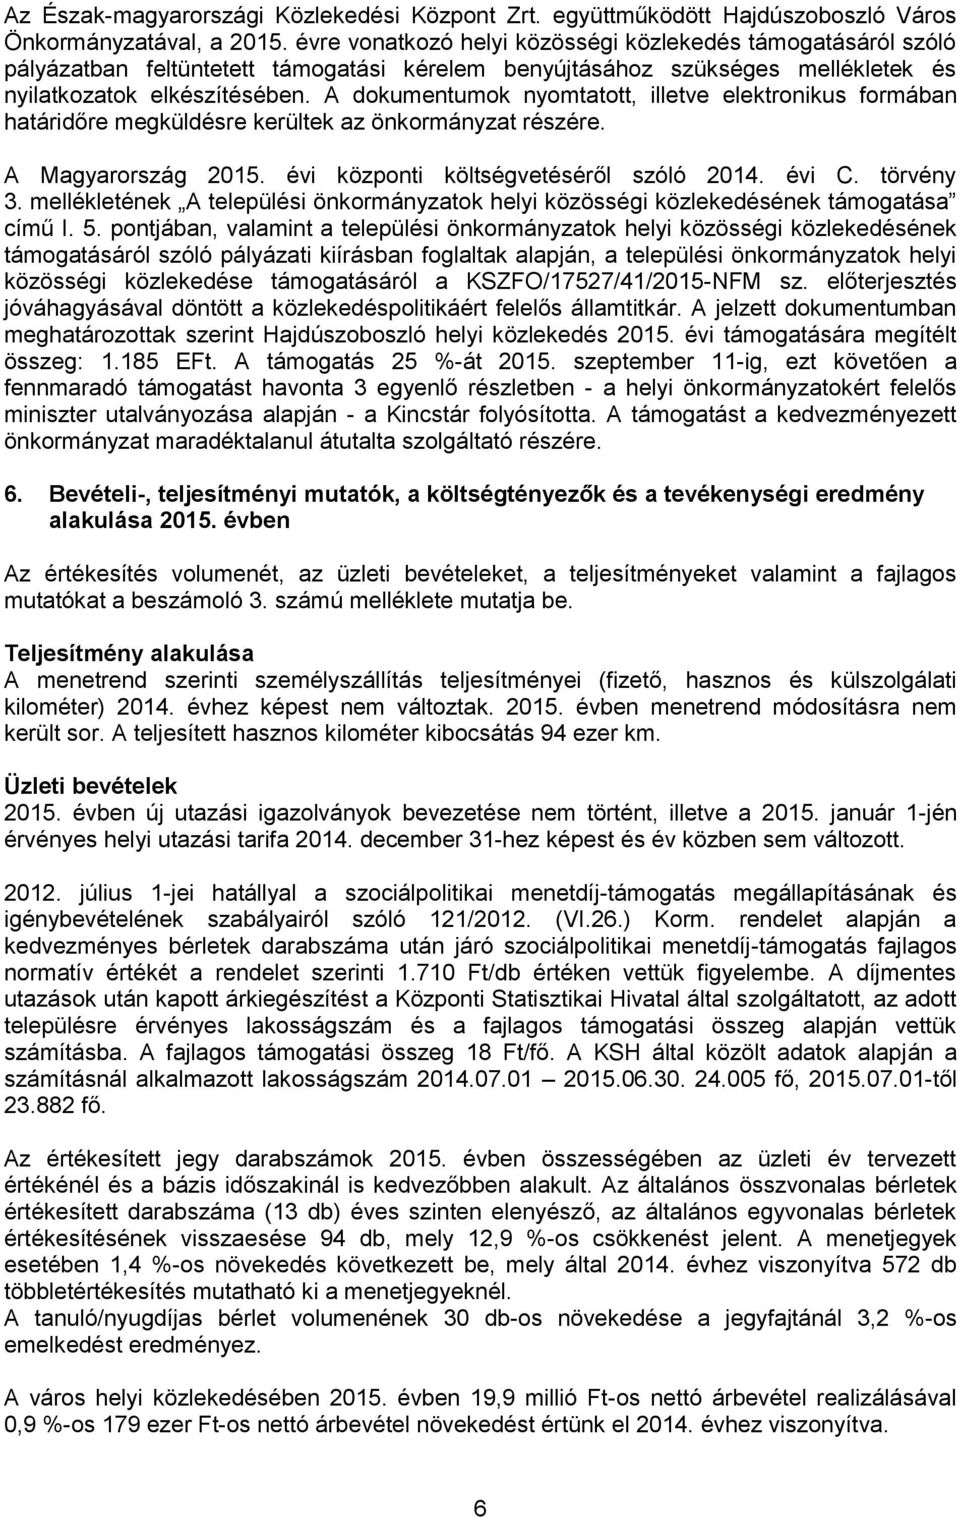 A dokumentumok nyomtatott, illetve elektronikus formában határidőre megküldésre kerültek az önkormányzat részére. A Magyarország 2015. évi központi költségvetéséről szóló 2014. évi C. törvény 3.